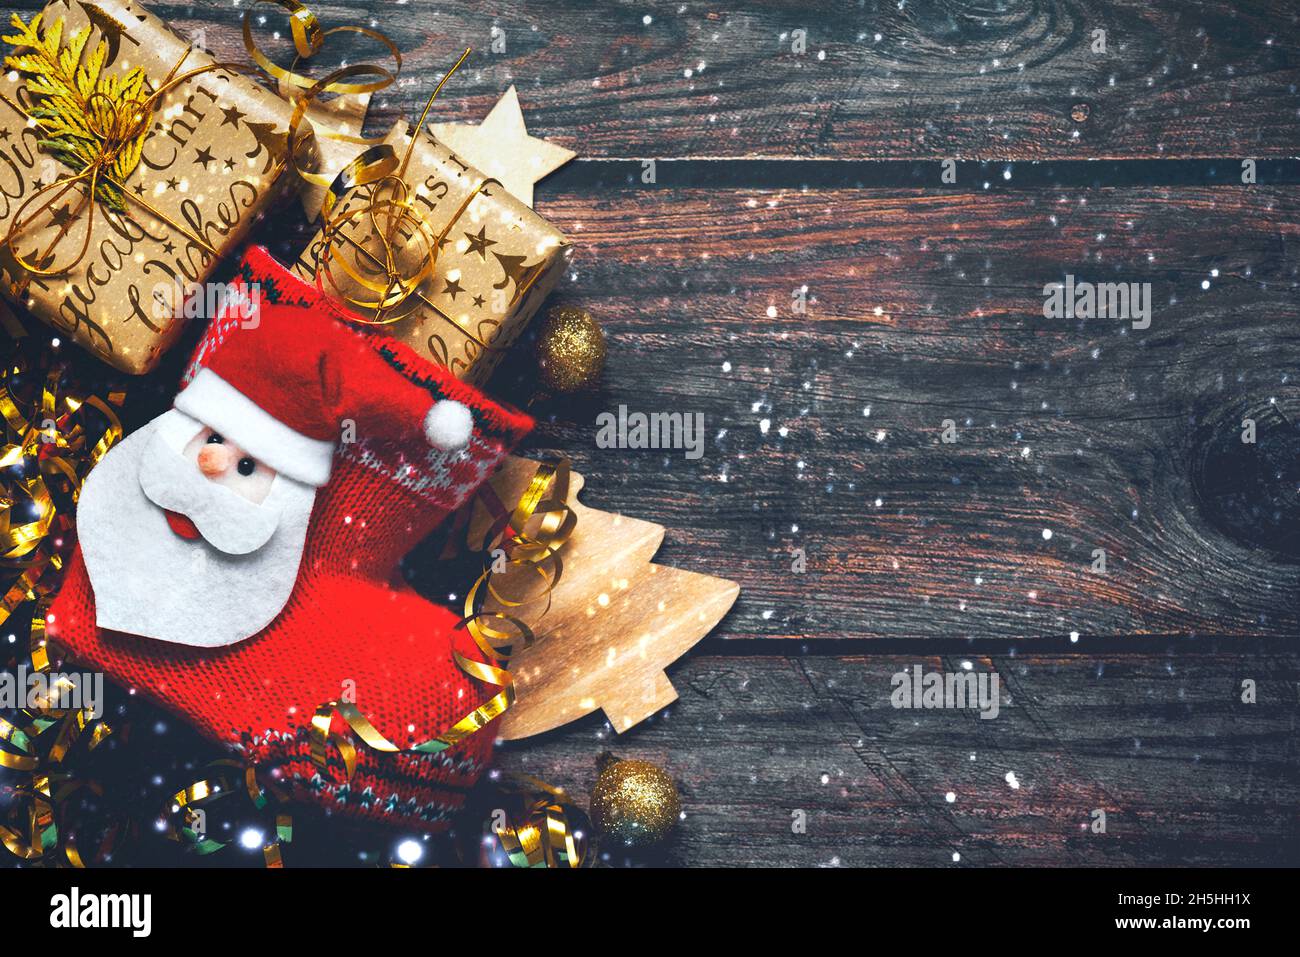 Joyeux Noël.Vue de dessus du bas de Noël avec décoration de Noël, flocons de neige et espace de copie sur une table en bois.Arrière-plan du concept de Noël Banque D'Images